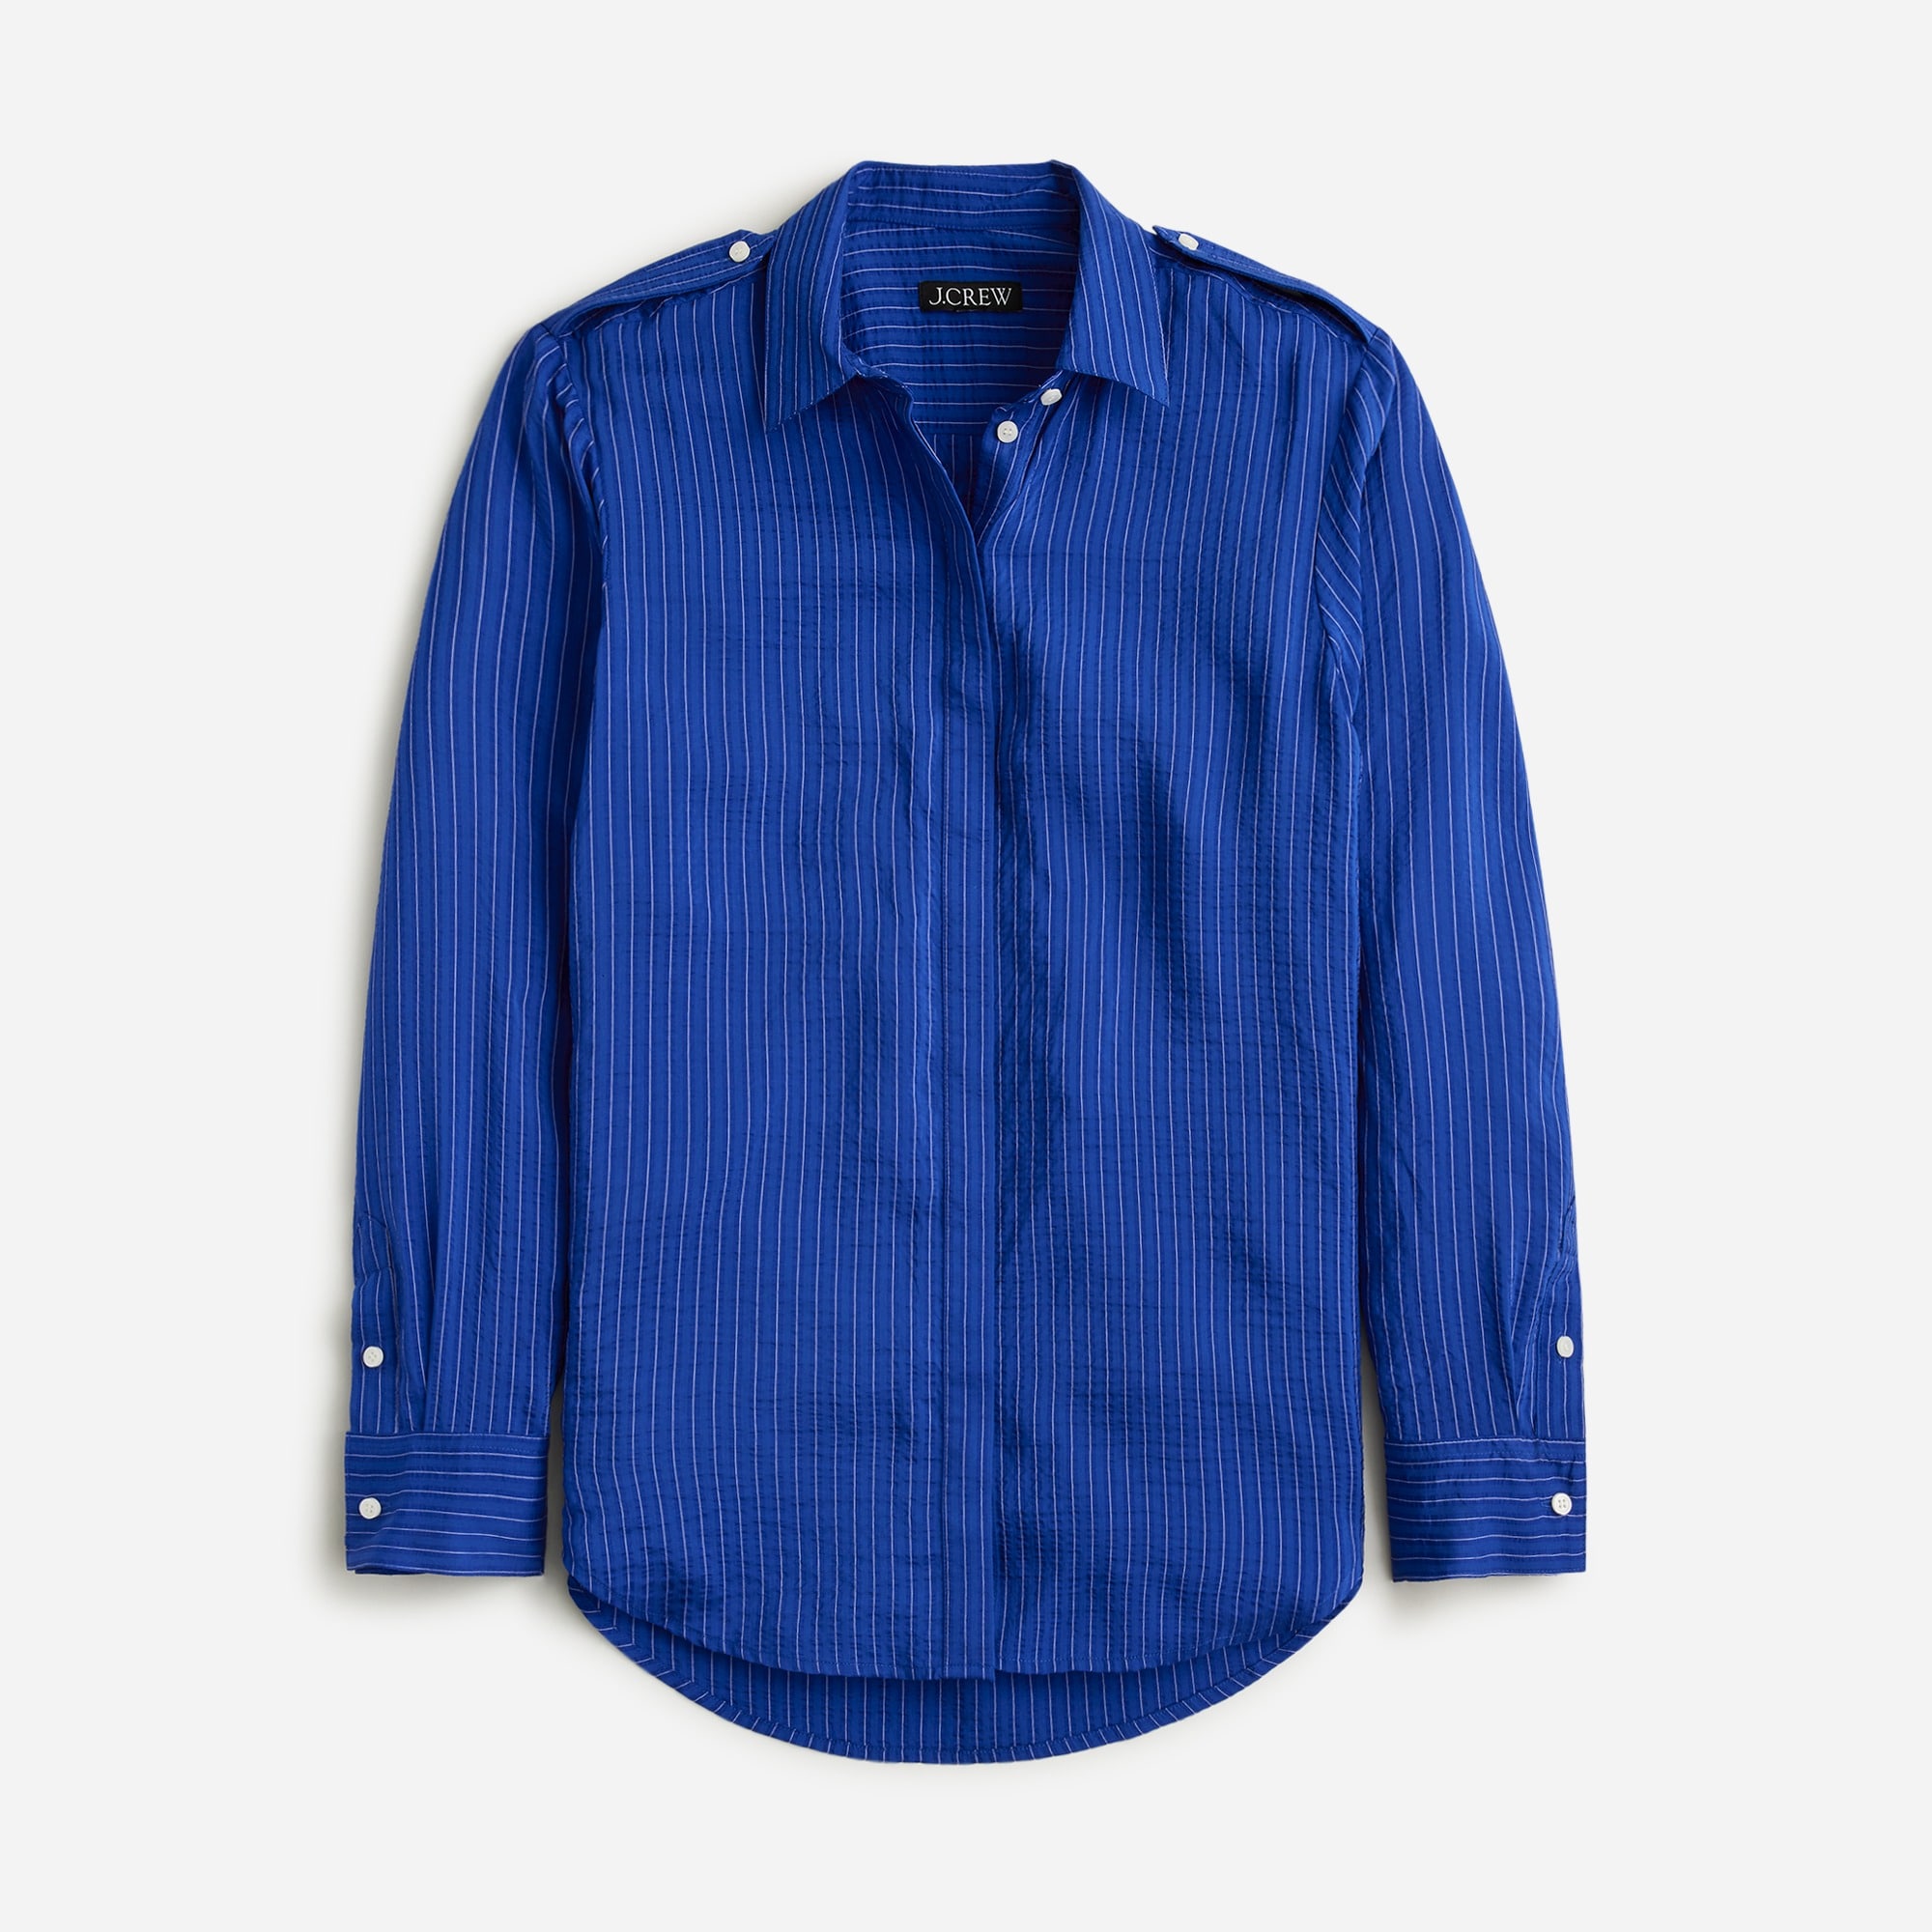  Textured drapey button-up shirt